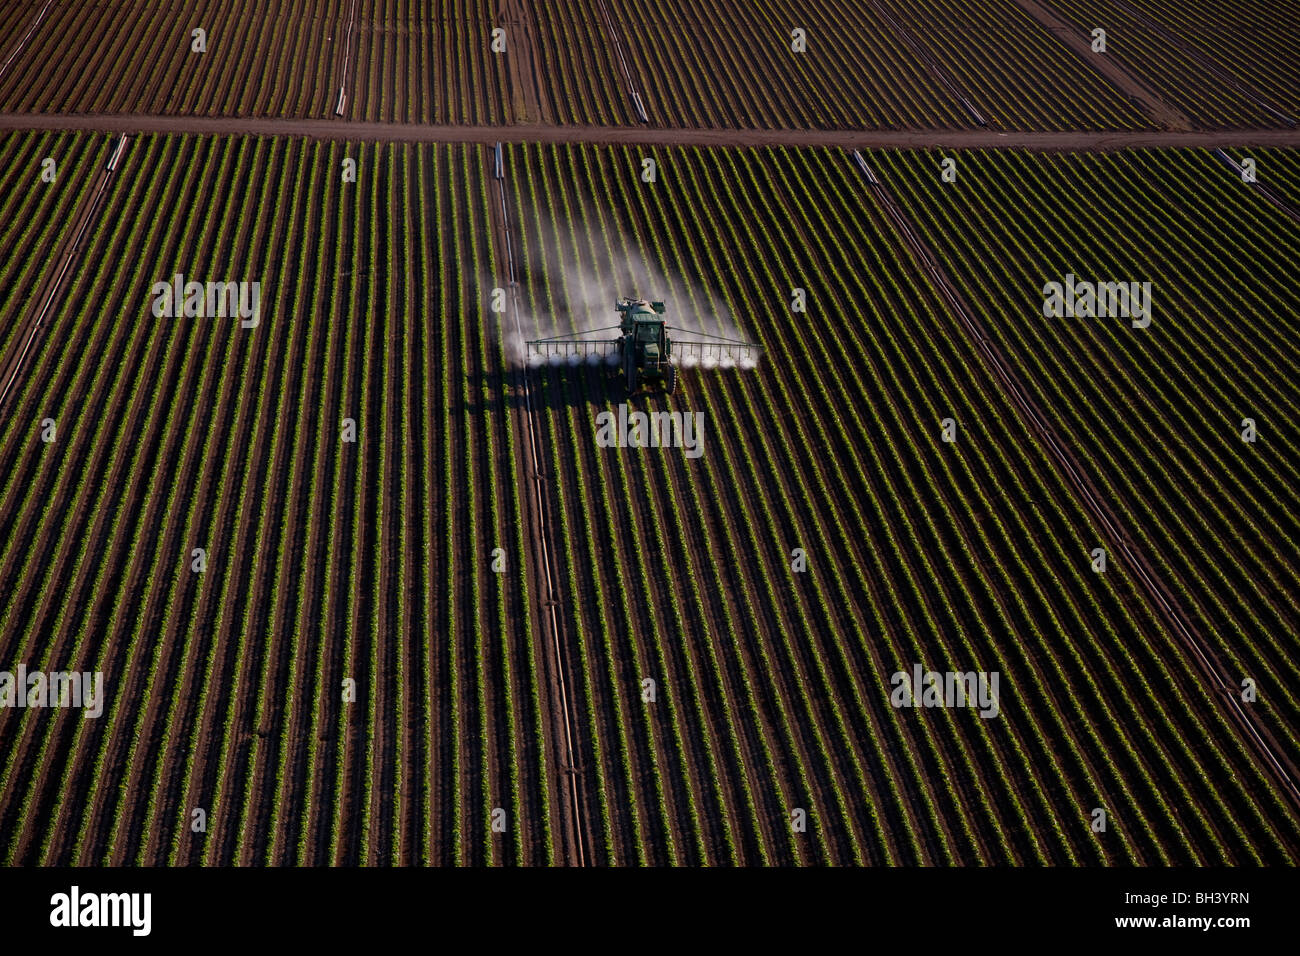 Anwenden von Flüssigdünger auf Pflanzen, Südflorida Landwirtschaft Stockfoto